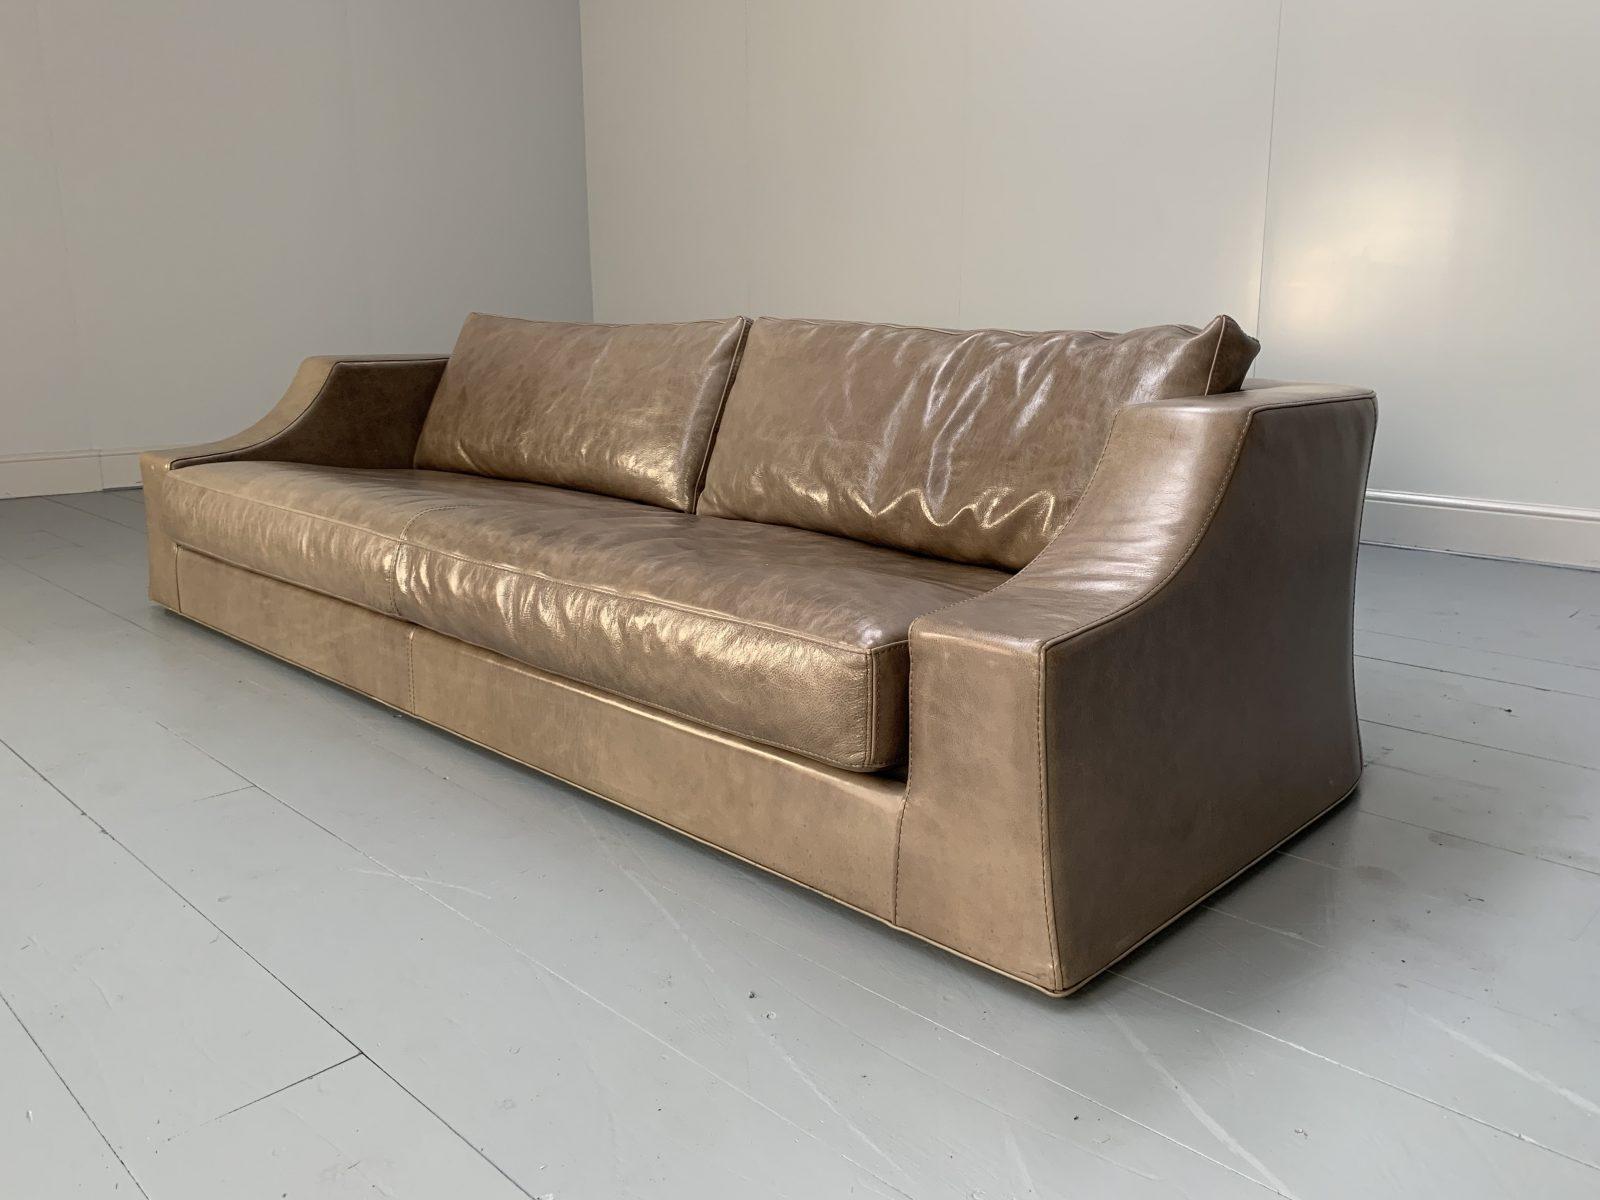 Dies ist ein spektakuläres, seltenes 4-Sitzer-Sofa aus dem weltbekannten italienischen Möbelhaus Baxter, das mit einem erhabenen cremefarbenen 